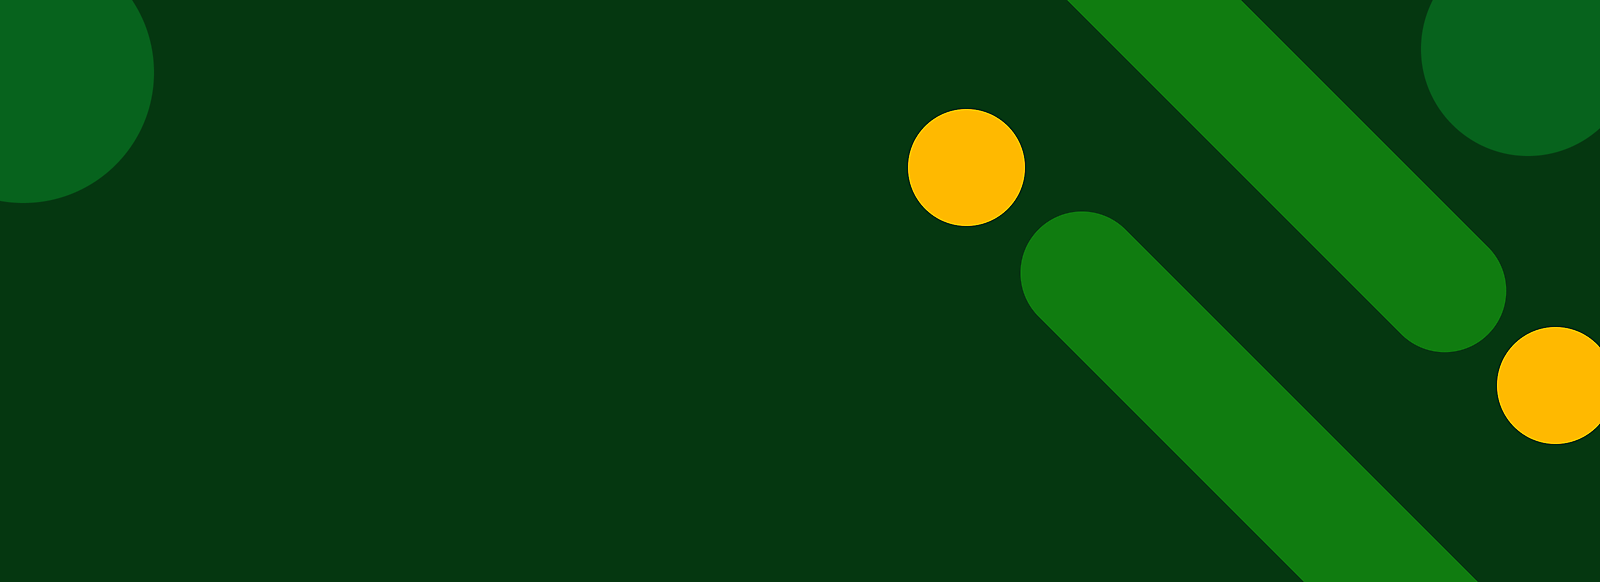 抽象綠色背景與黃色點和對角綠色條紋。